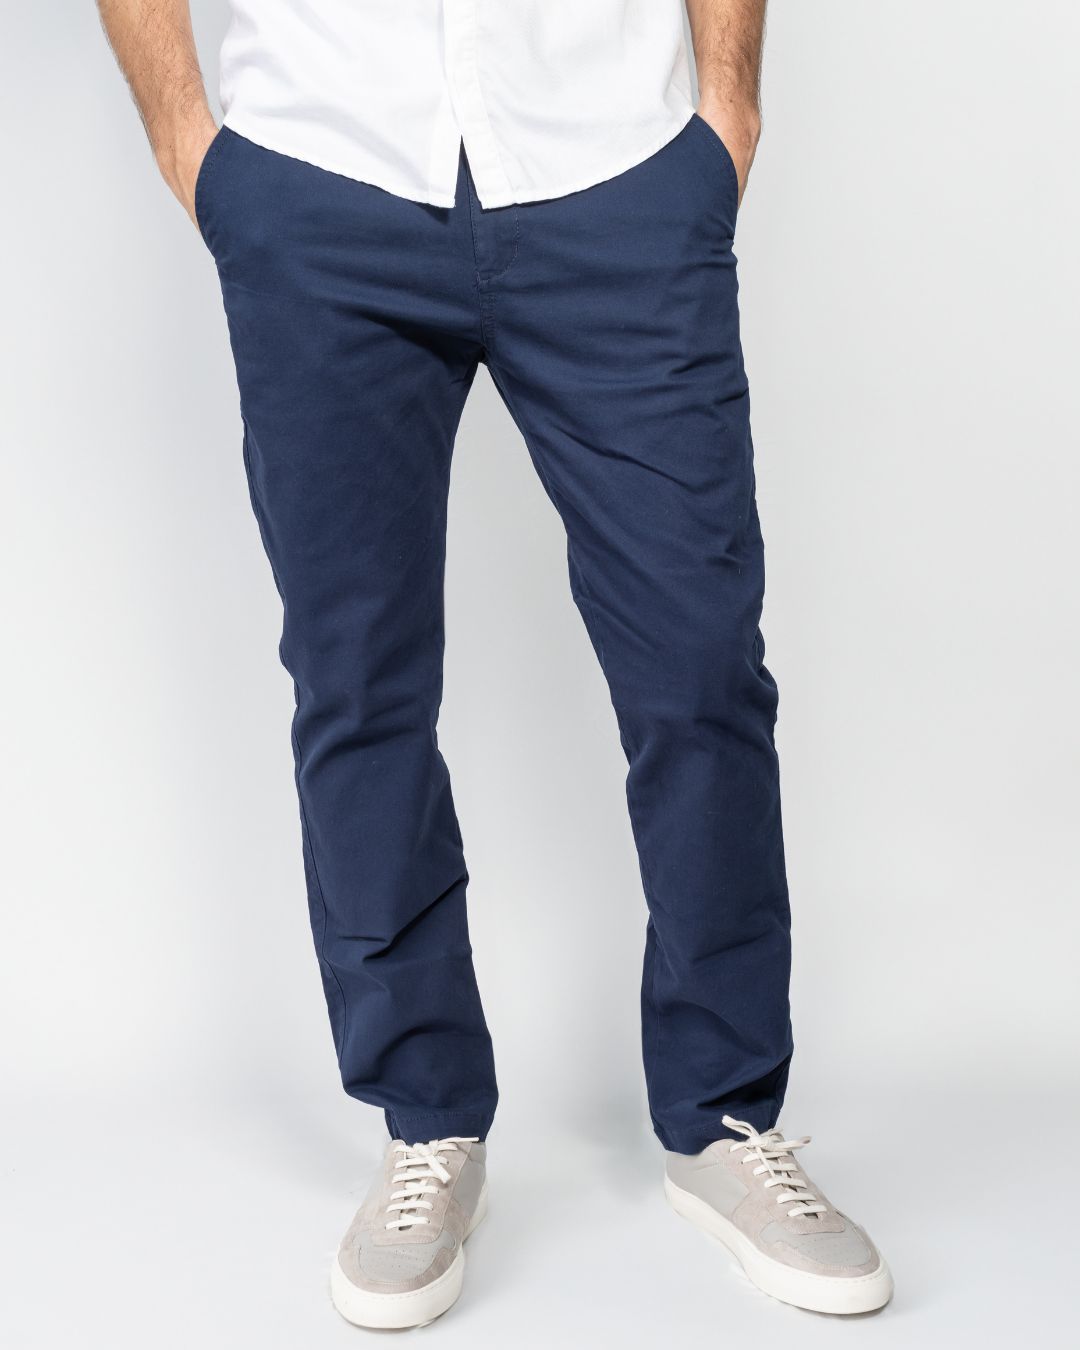 Pantalón Elástico Azul Navy